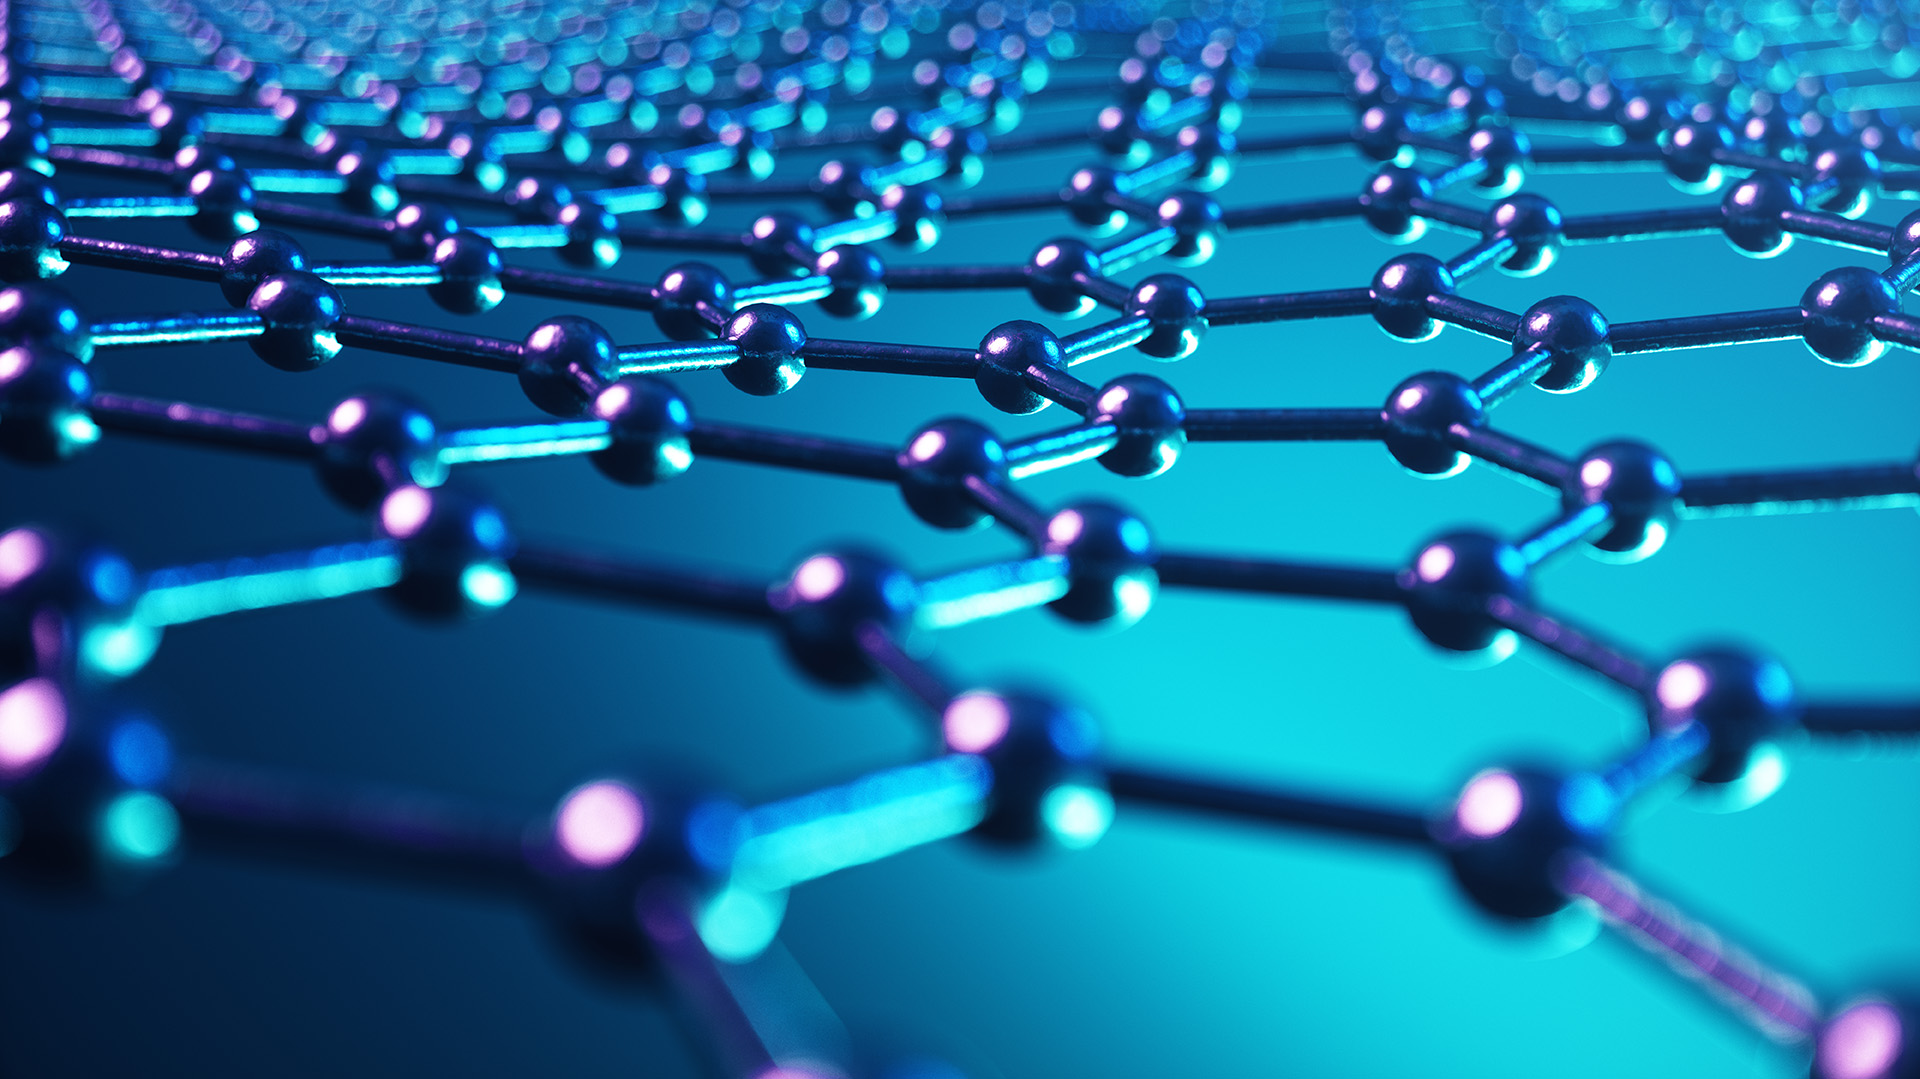 El inoculante utilizará tecnología de nanopartículas (Foto: Shutterstock)